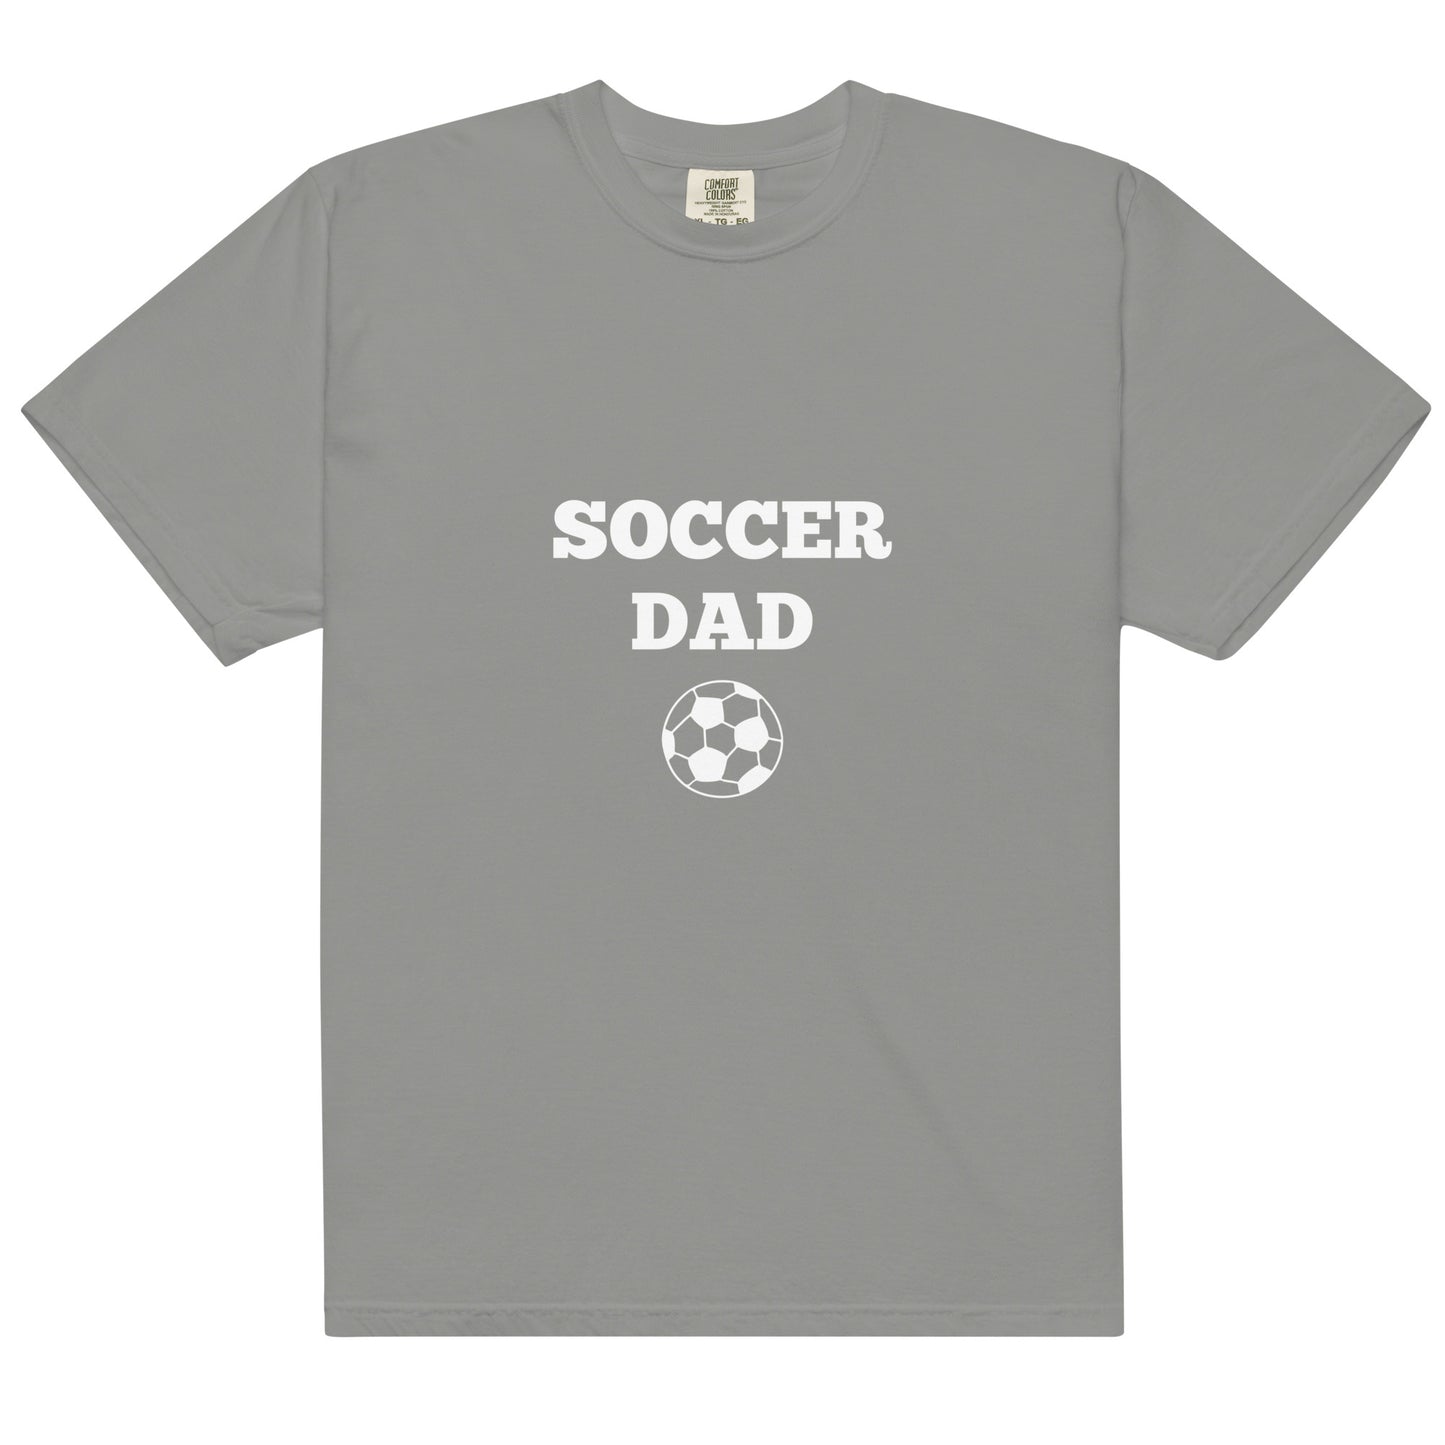 Soccer Dad Printed Tshirt